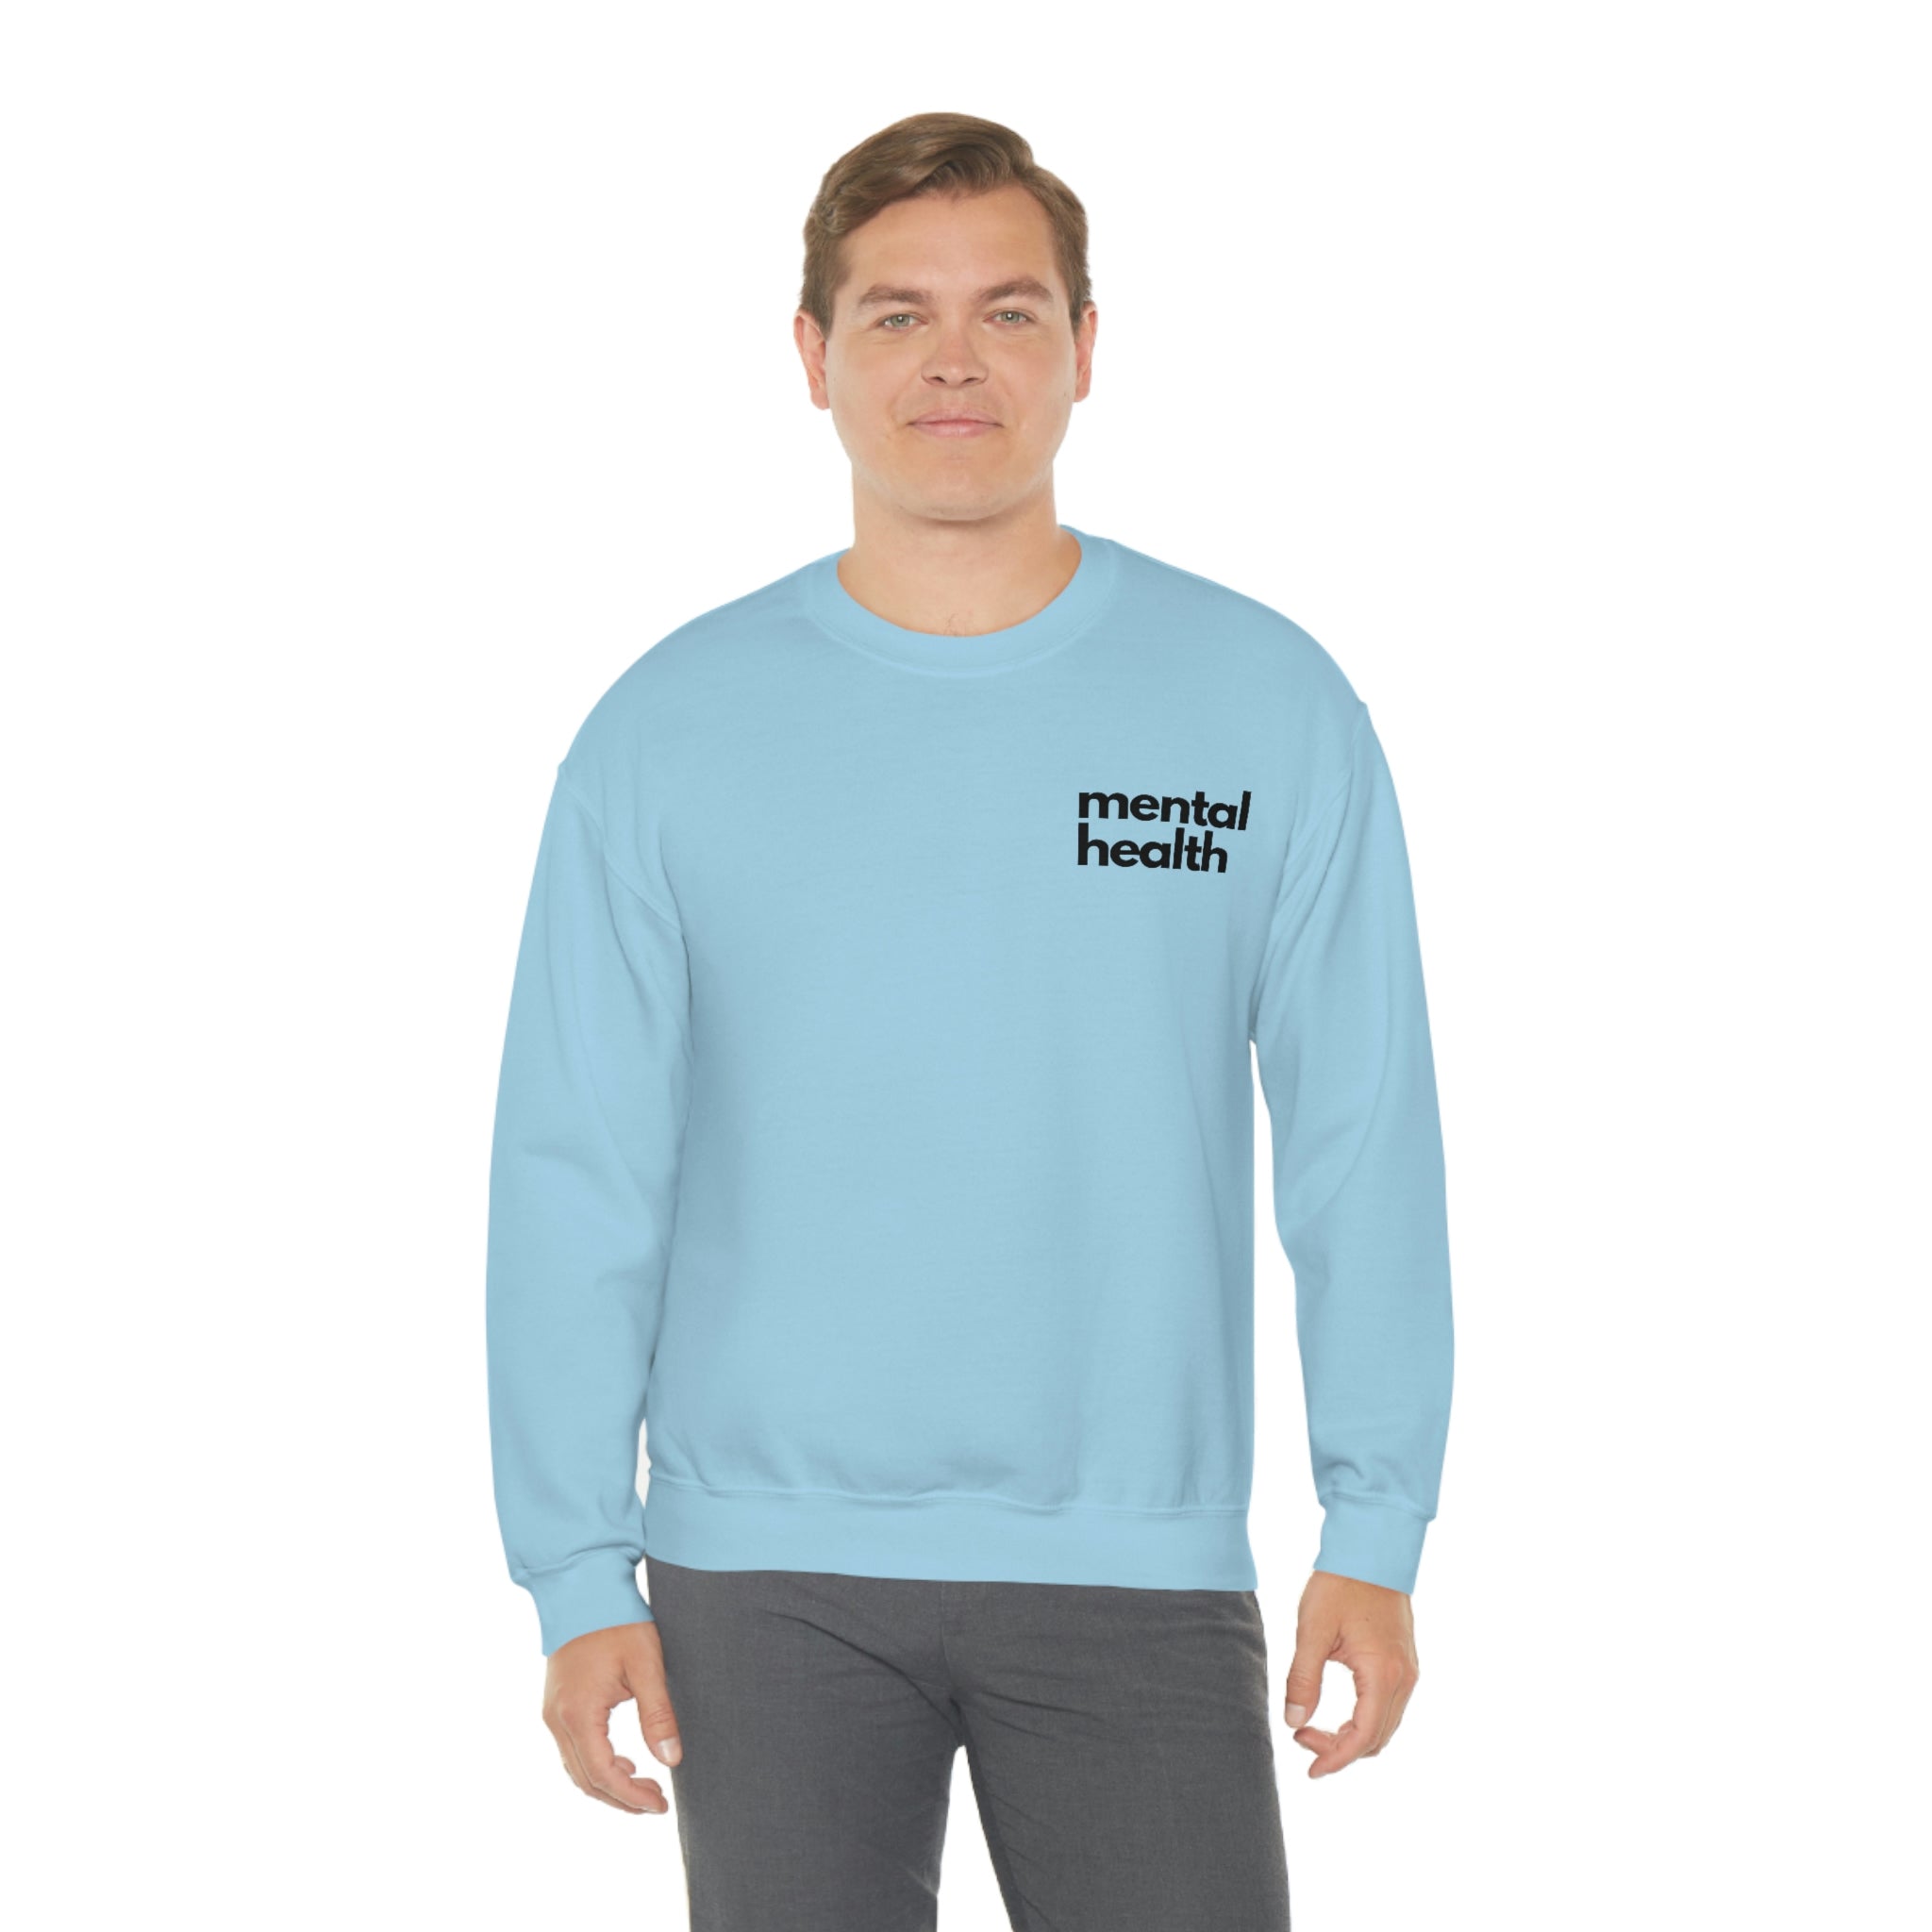 "mental health" Minimalist Unisex Sweatshirt